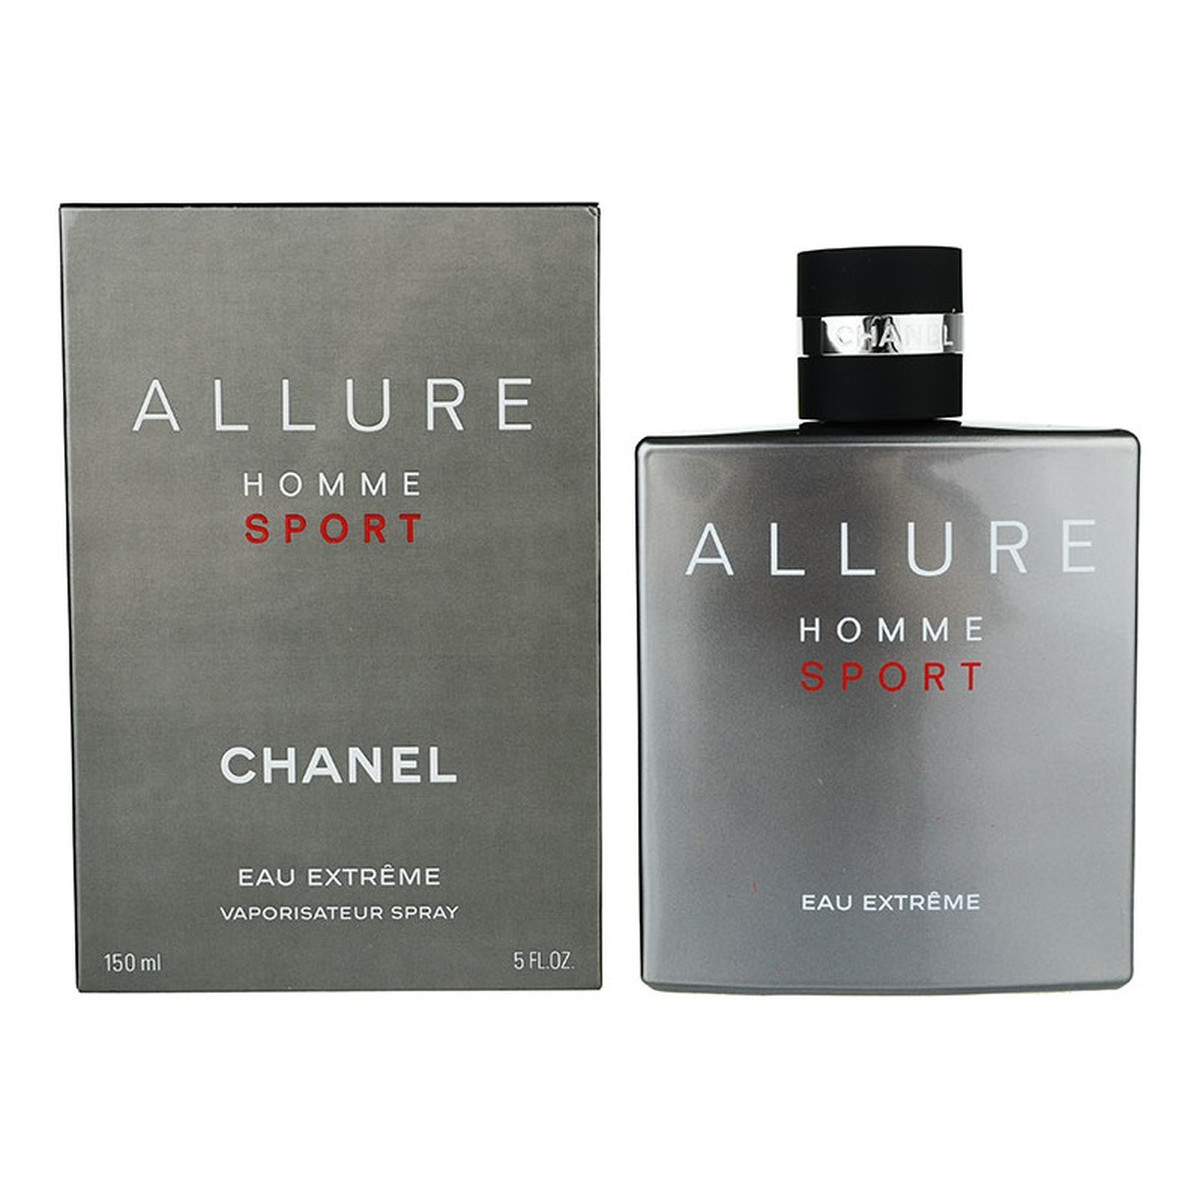 Chanel Allure Homme Sport Eau Extreme woda toaletowa dla mężczyzn 150ml